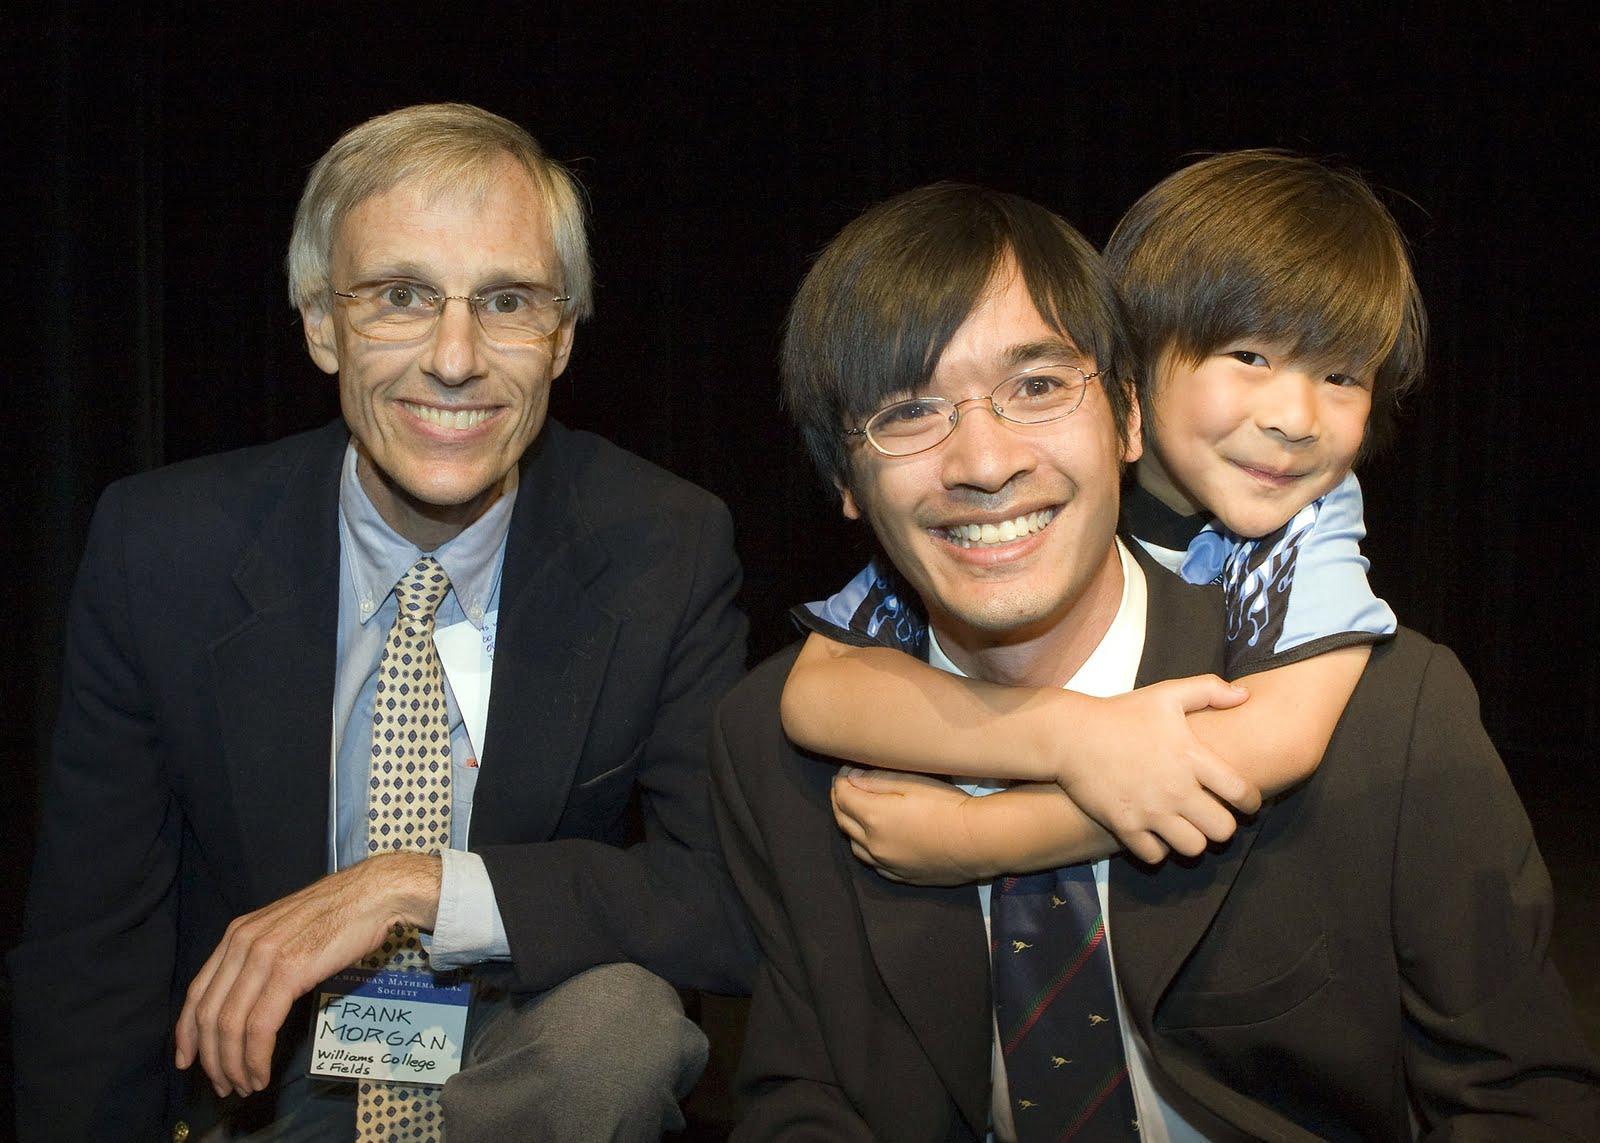 陶哲轩：全球智商最高华人，7岁自学微积分，31岁斩获数学界诺奖